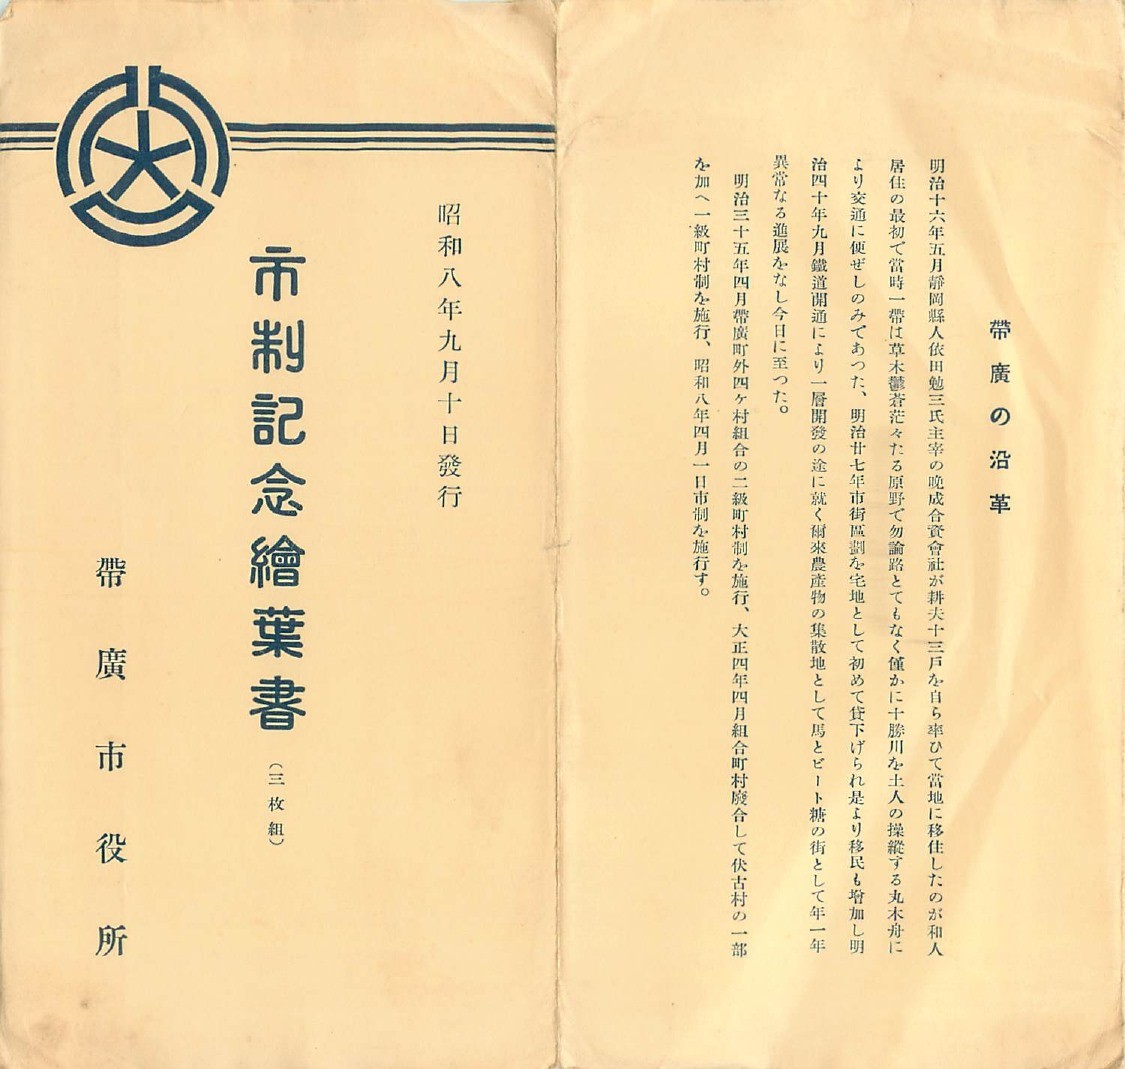 昭和8年9月10日の市制施行記念式典の際に作成された絵葉書の包み紙